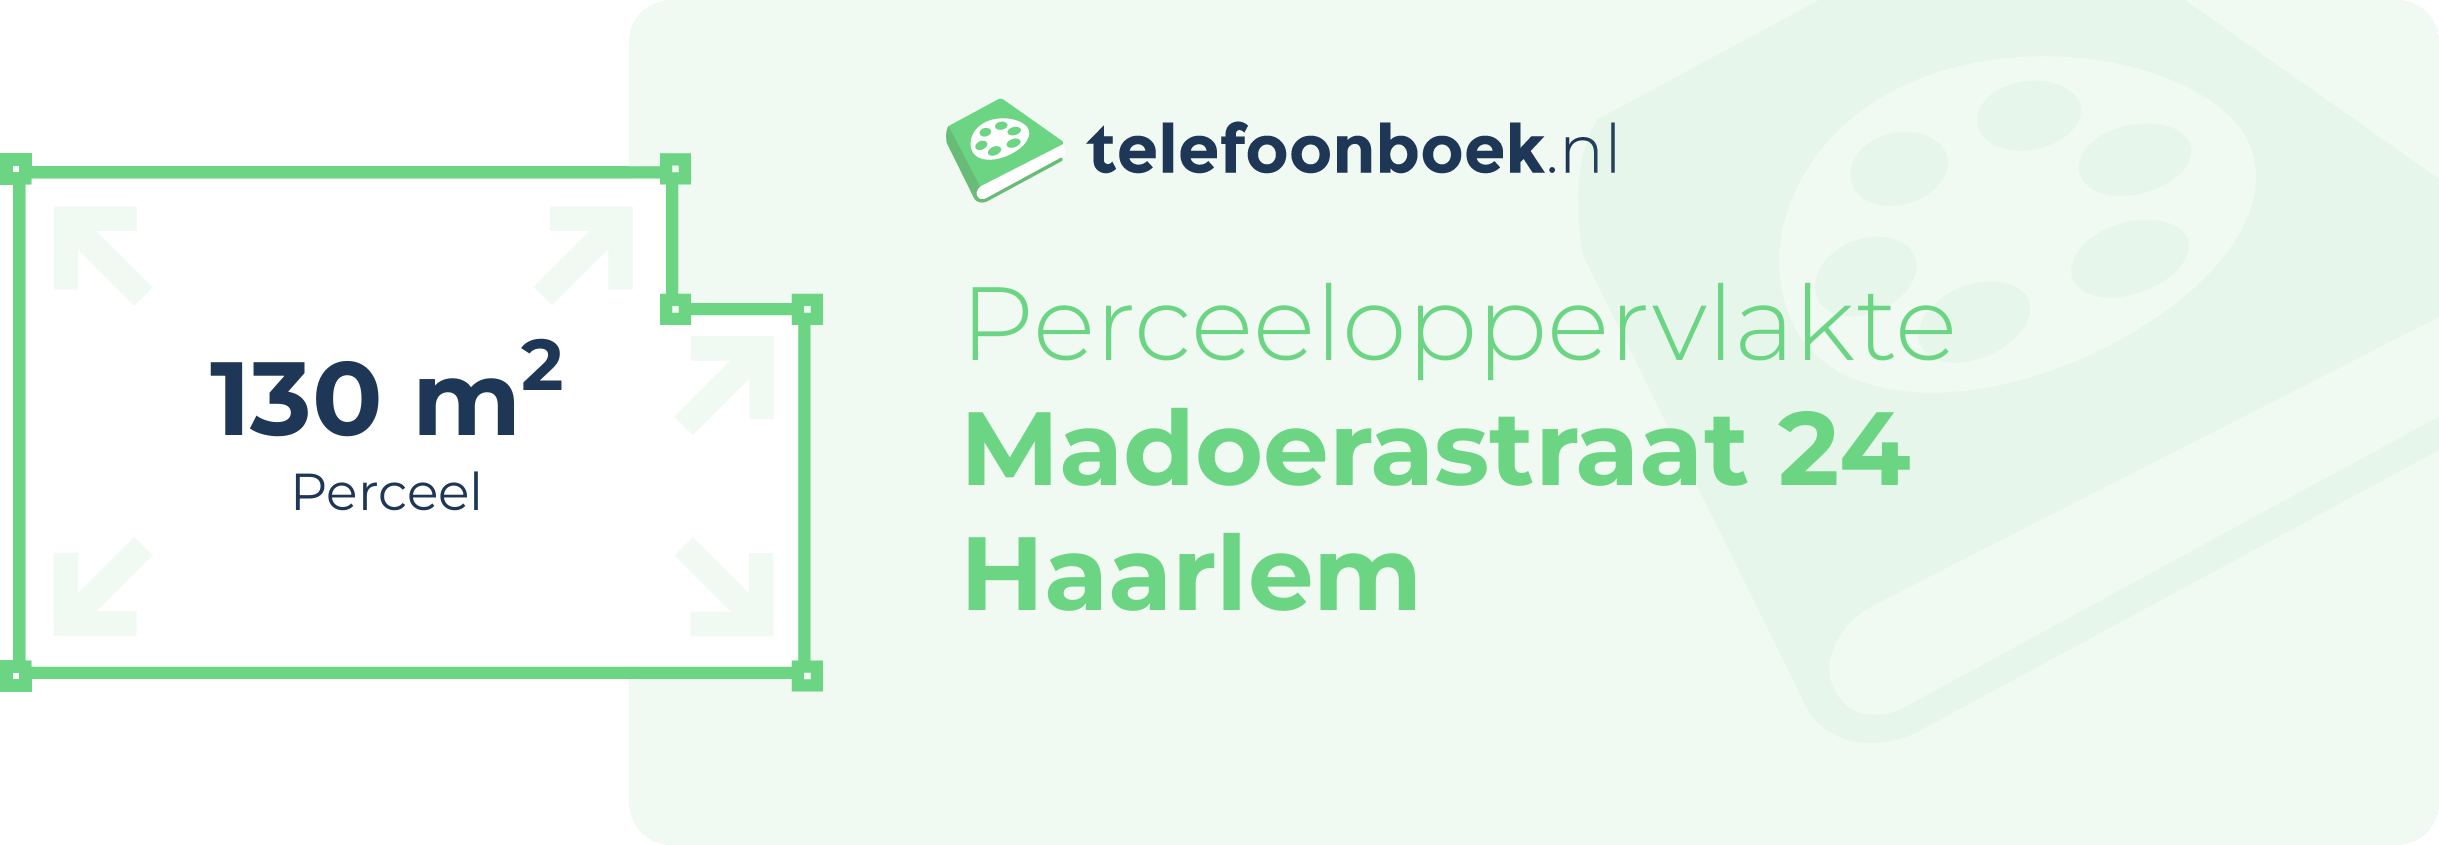 Perceeloppervlakte Madoerastraat 24 Haarlem